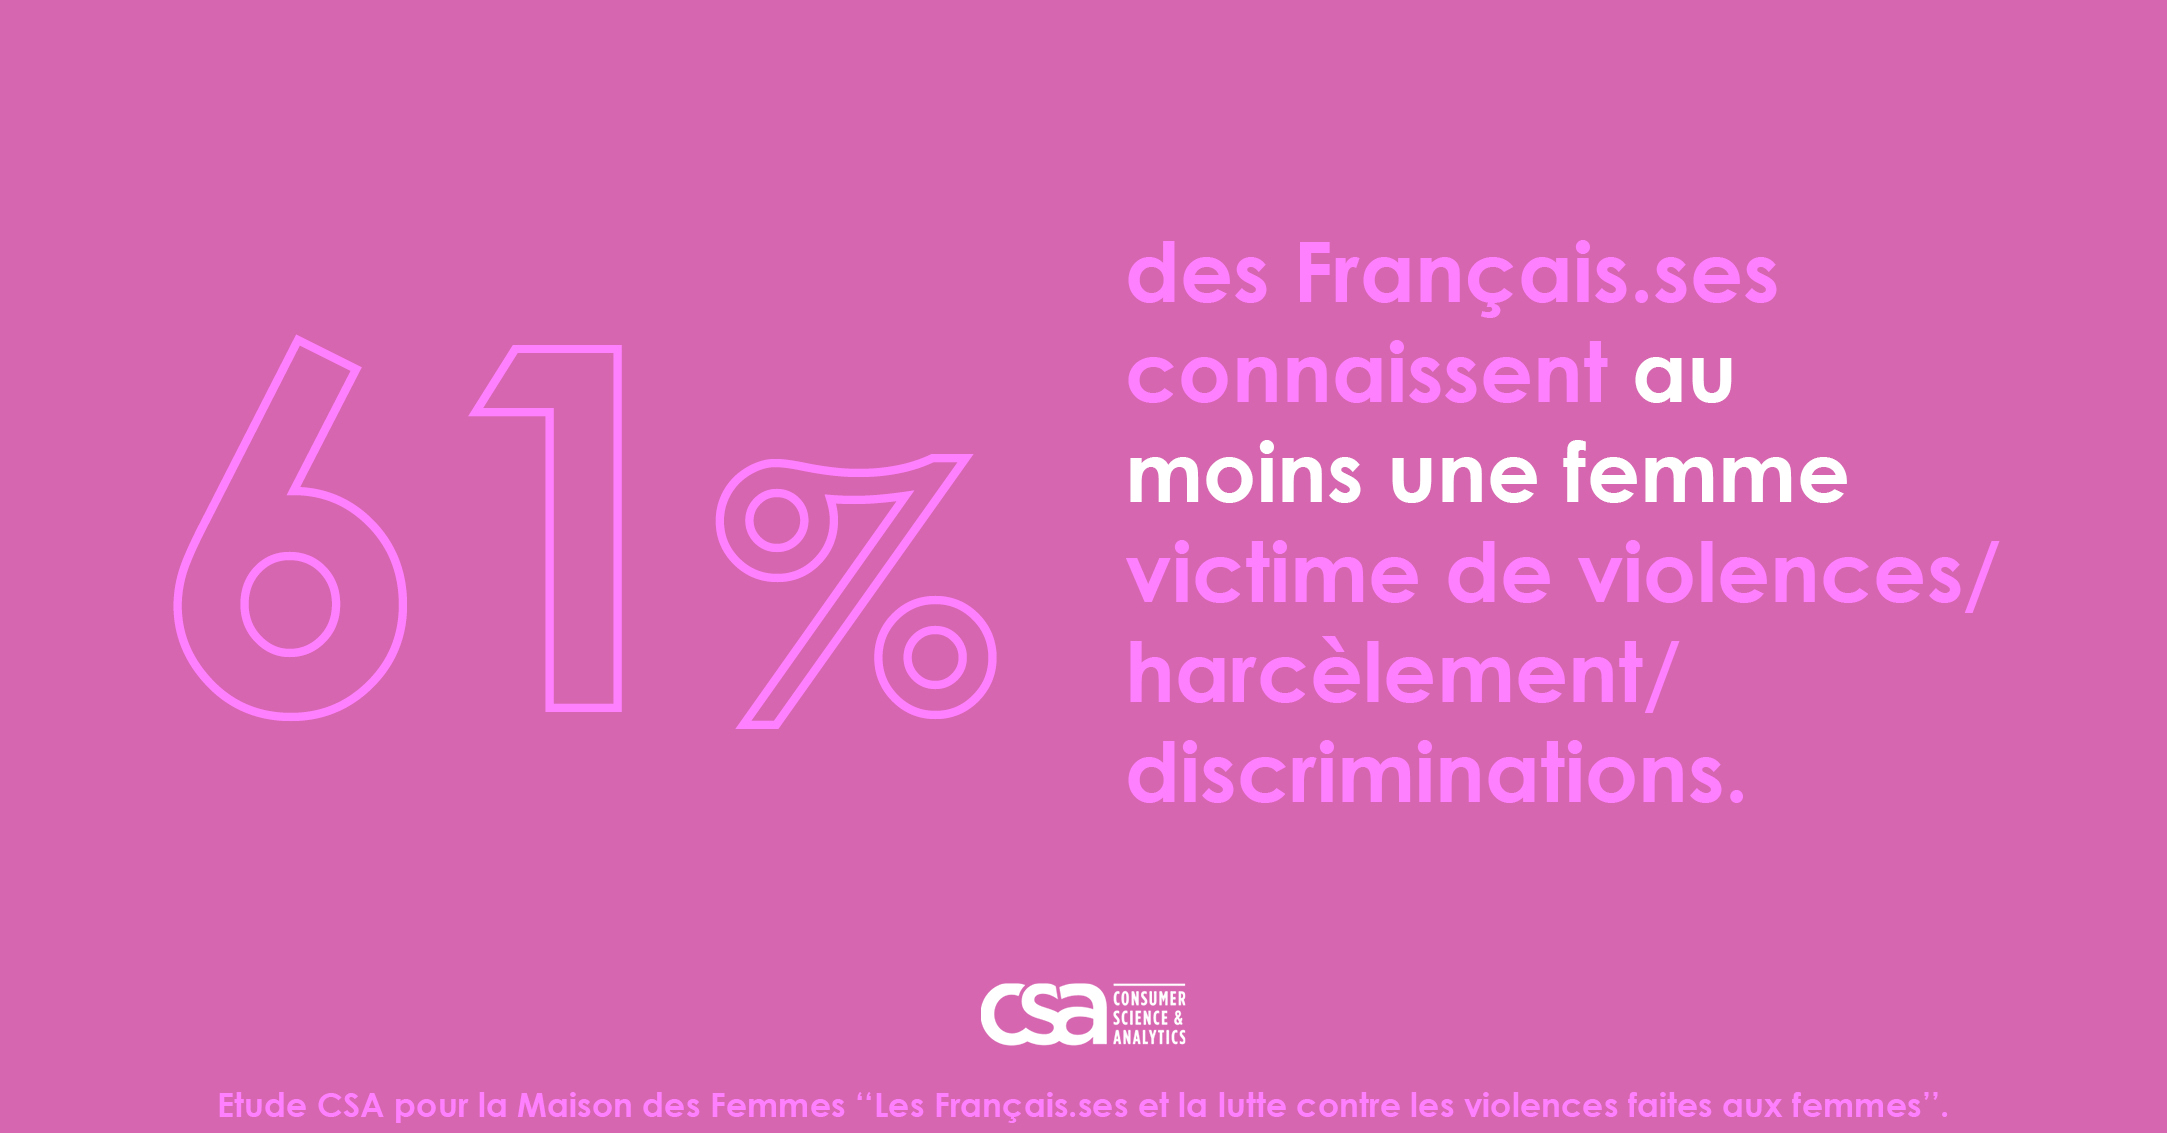 Les Français et la lutte contre les violences faites aux femmes